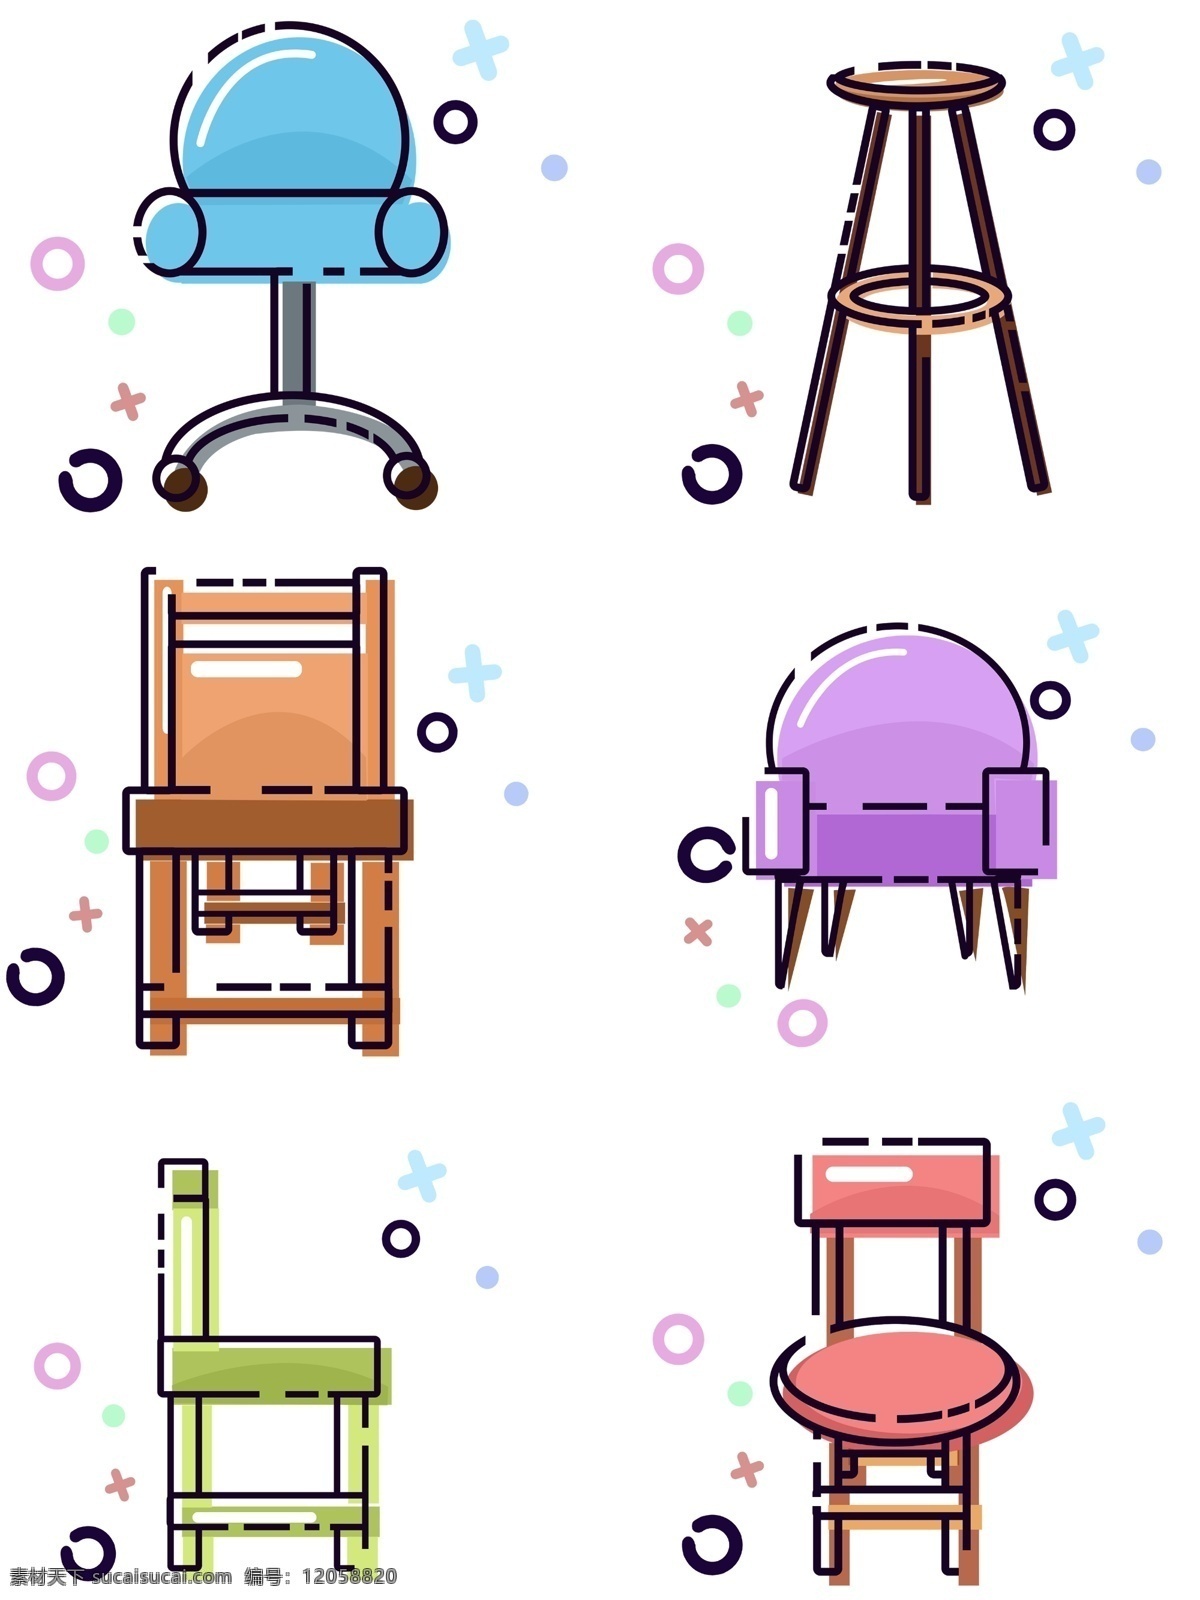 mbe 风格 生活用品 椅子 类 套 图 卡通 可爱 商用 蓝色 紫色 绿色 沙发椅 板凳 电脑椅 套图 可商用 粉色